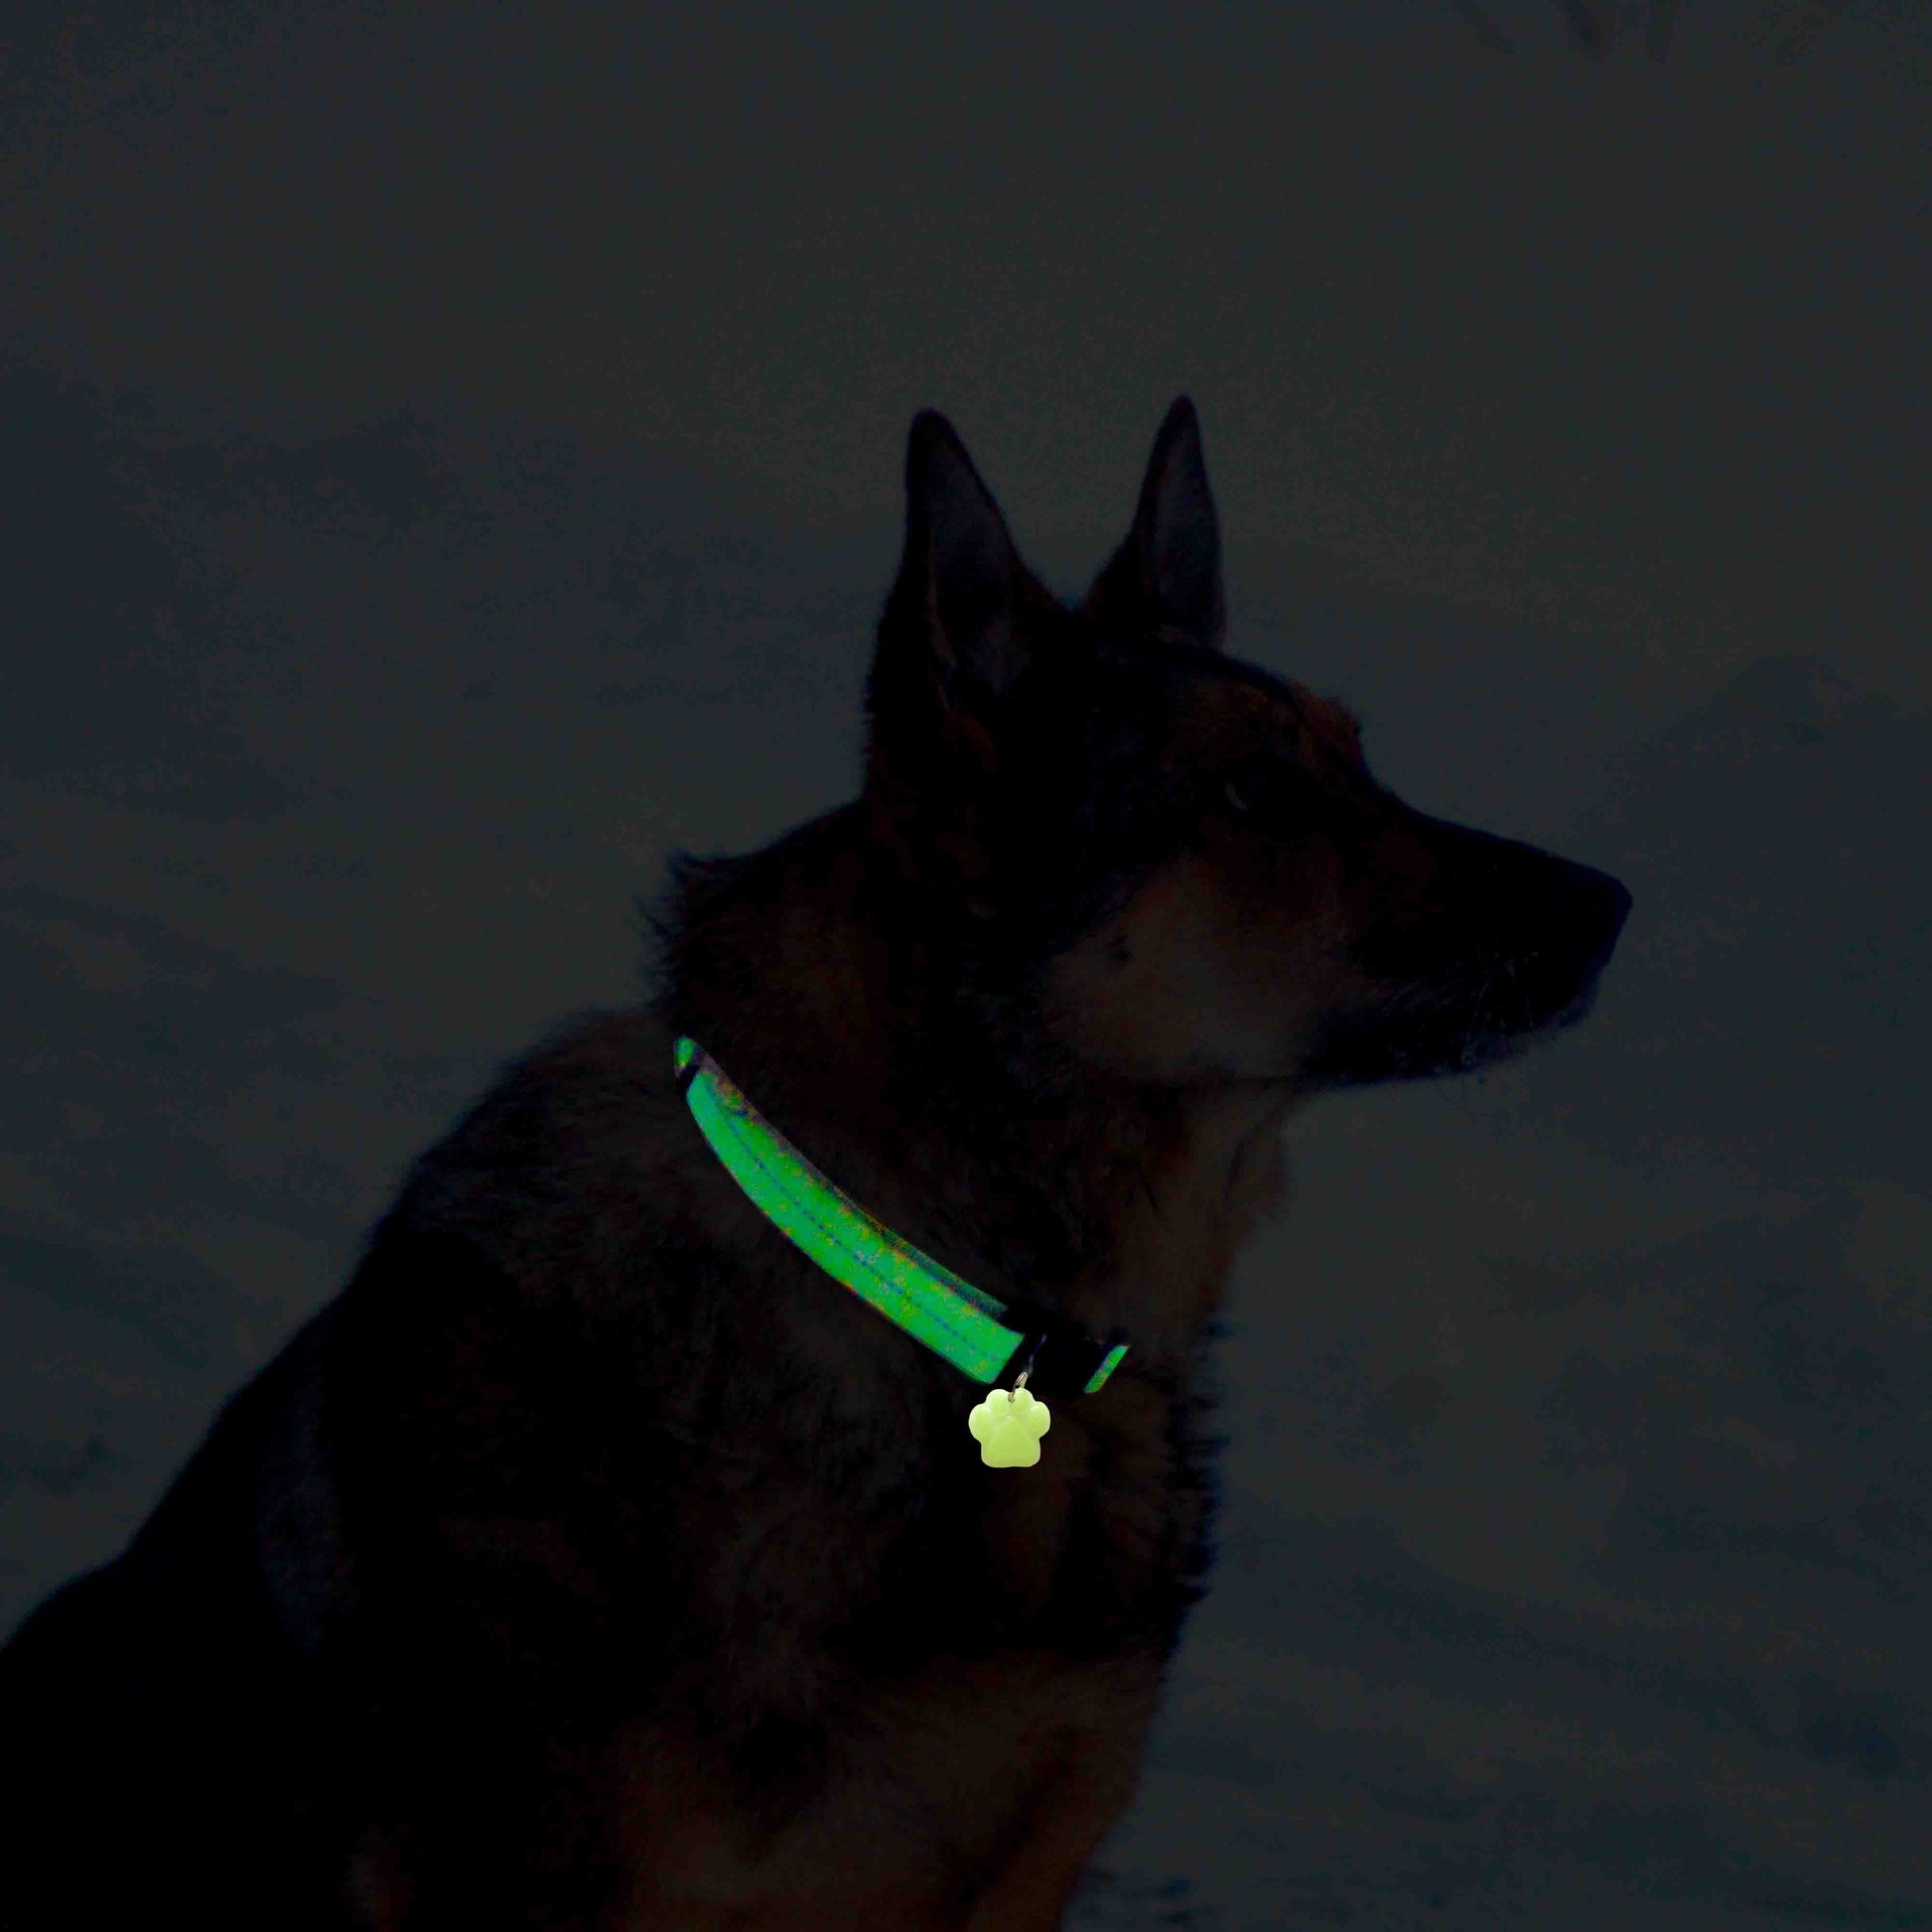 Glow in The Dark Pet Tags/GlowPetTag/Dog ID tags/Cat ID tags/Pet Gift/Engraved Pet tags/Pet Name Tag/ID Tag/Glow Key Fob Small GlowBone Tag / Aqua